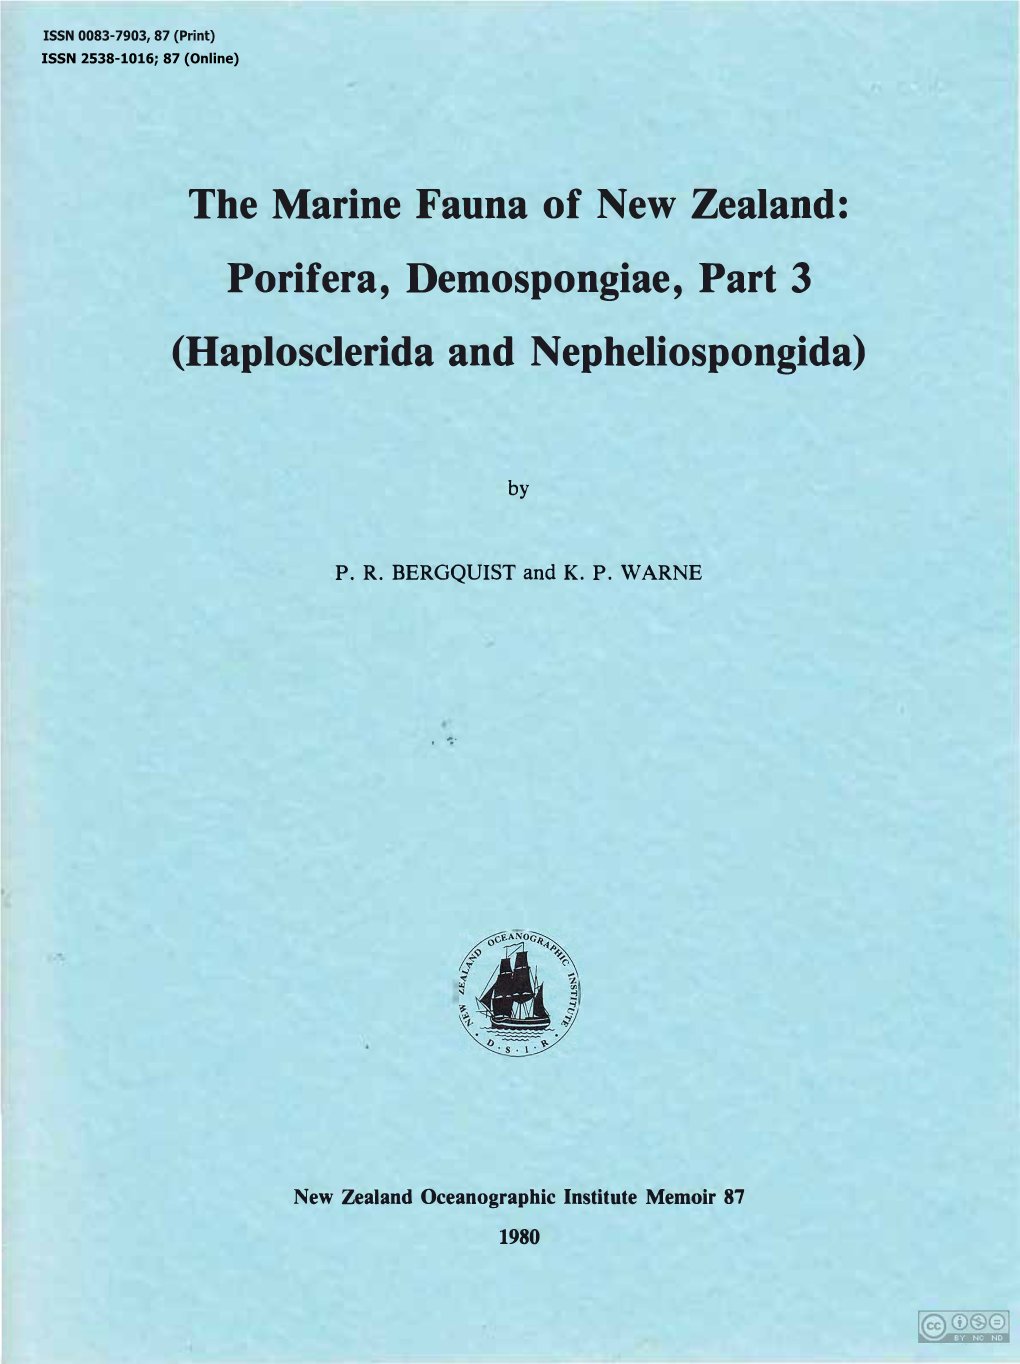 The Marine Fauna of New Zealand: Porifera, Demospongiae, Part 3 (Haplosclerida and Nepheliospongida)